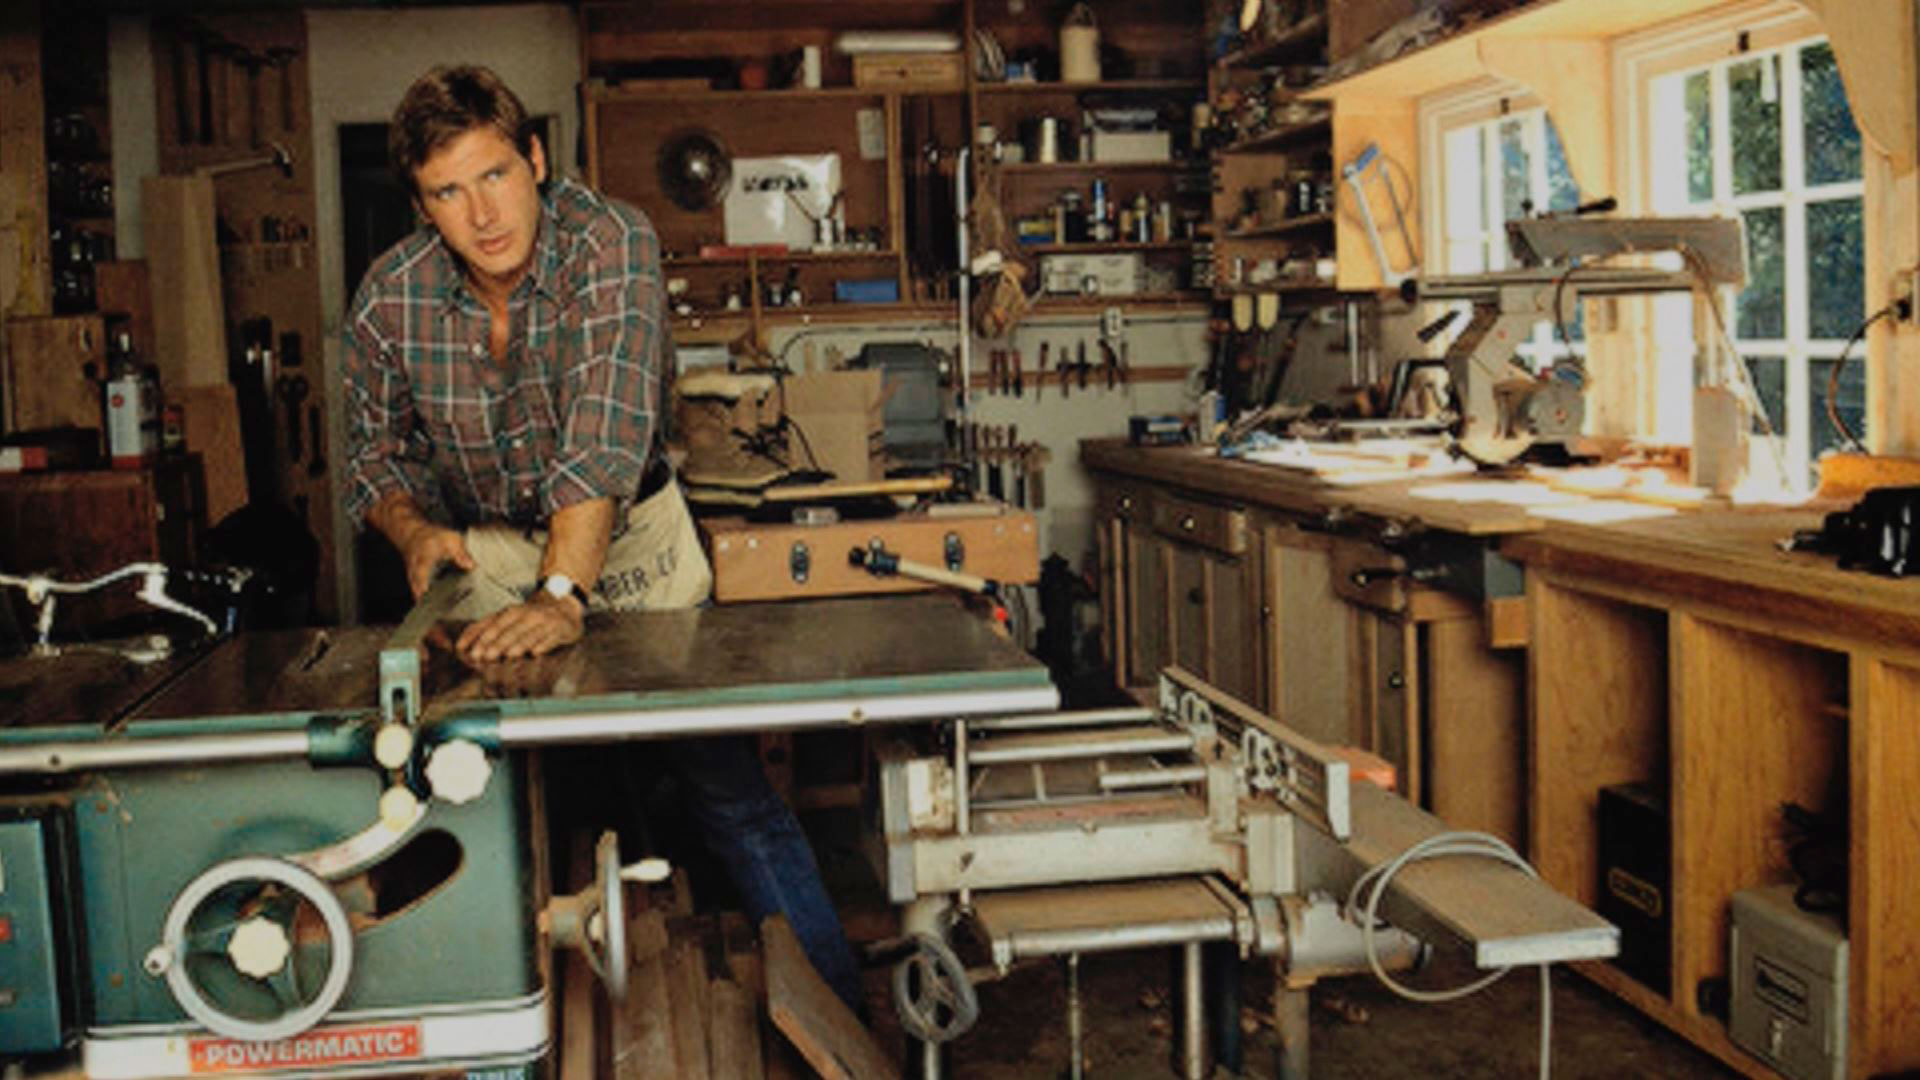 Hasta pasados los 30 años, Harrison Ford tuvo un plan B entre clavos, serruchos y maderas para sobrevivir: la fama como actor le era esquiva.